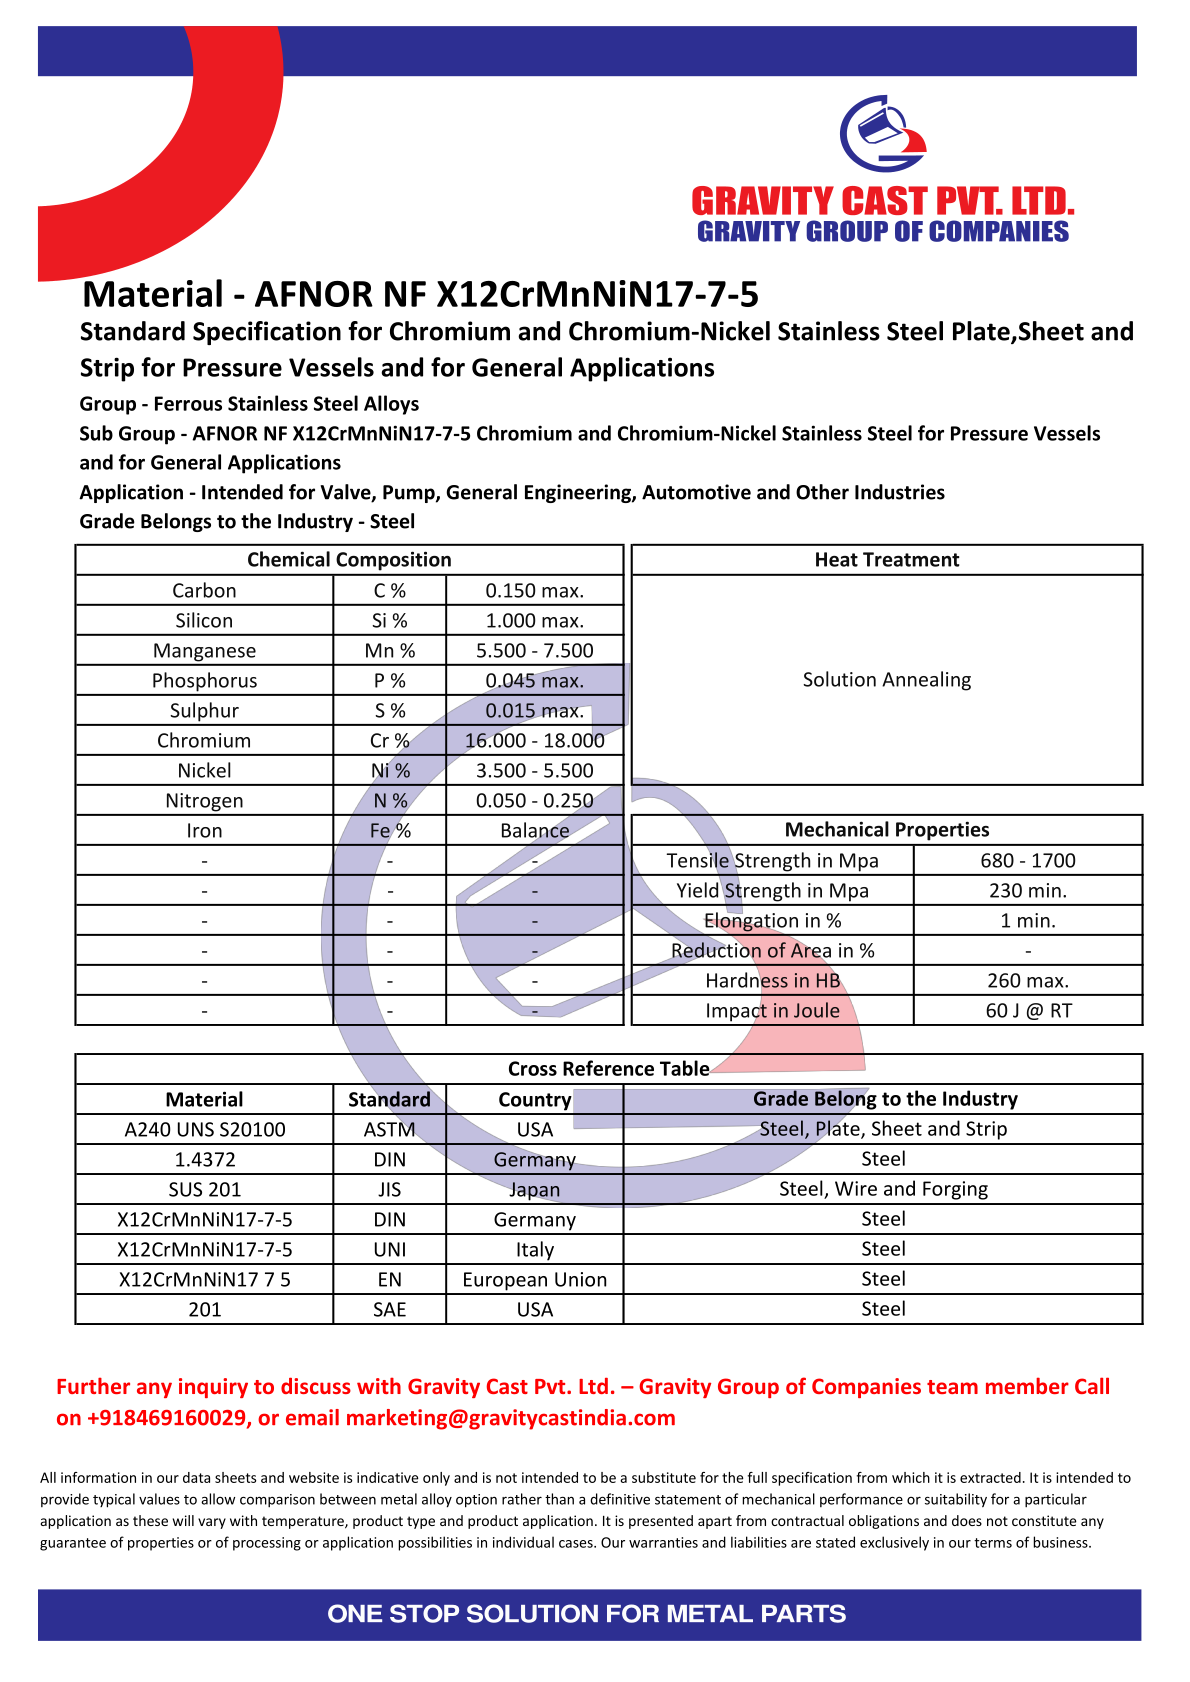 AFNOR NF X12CrMnNiN17-7-5.pdf